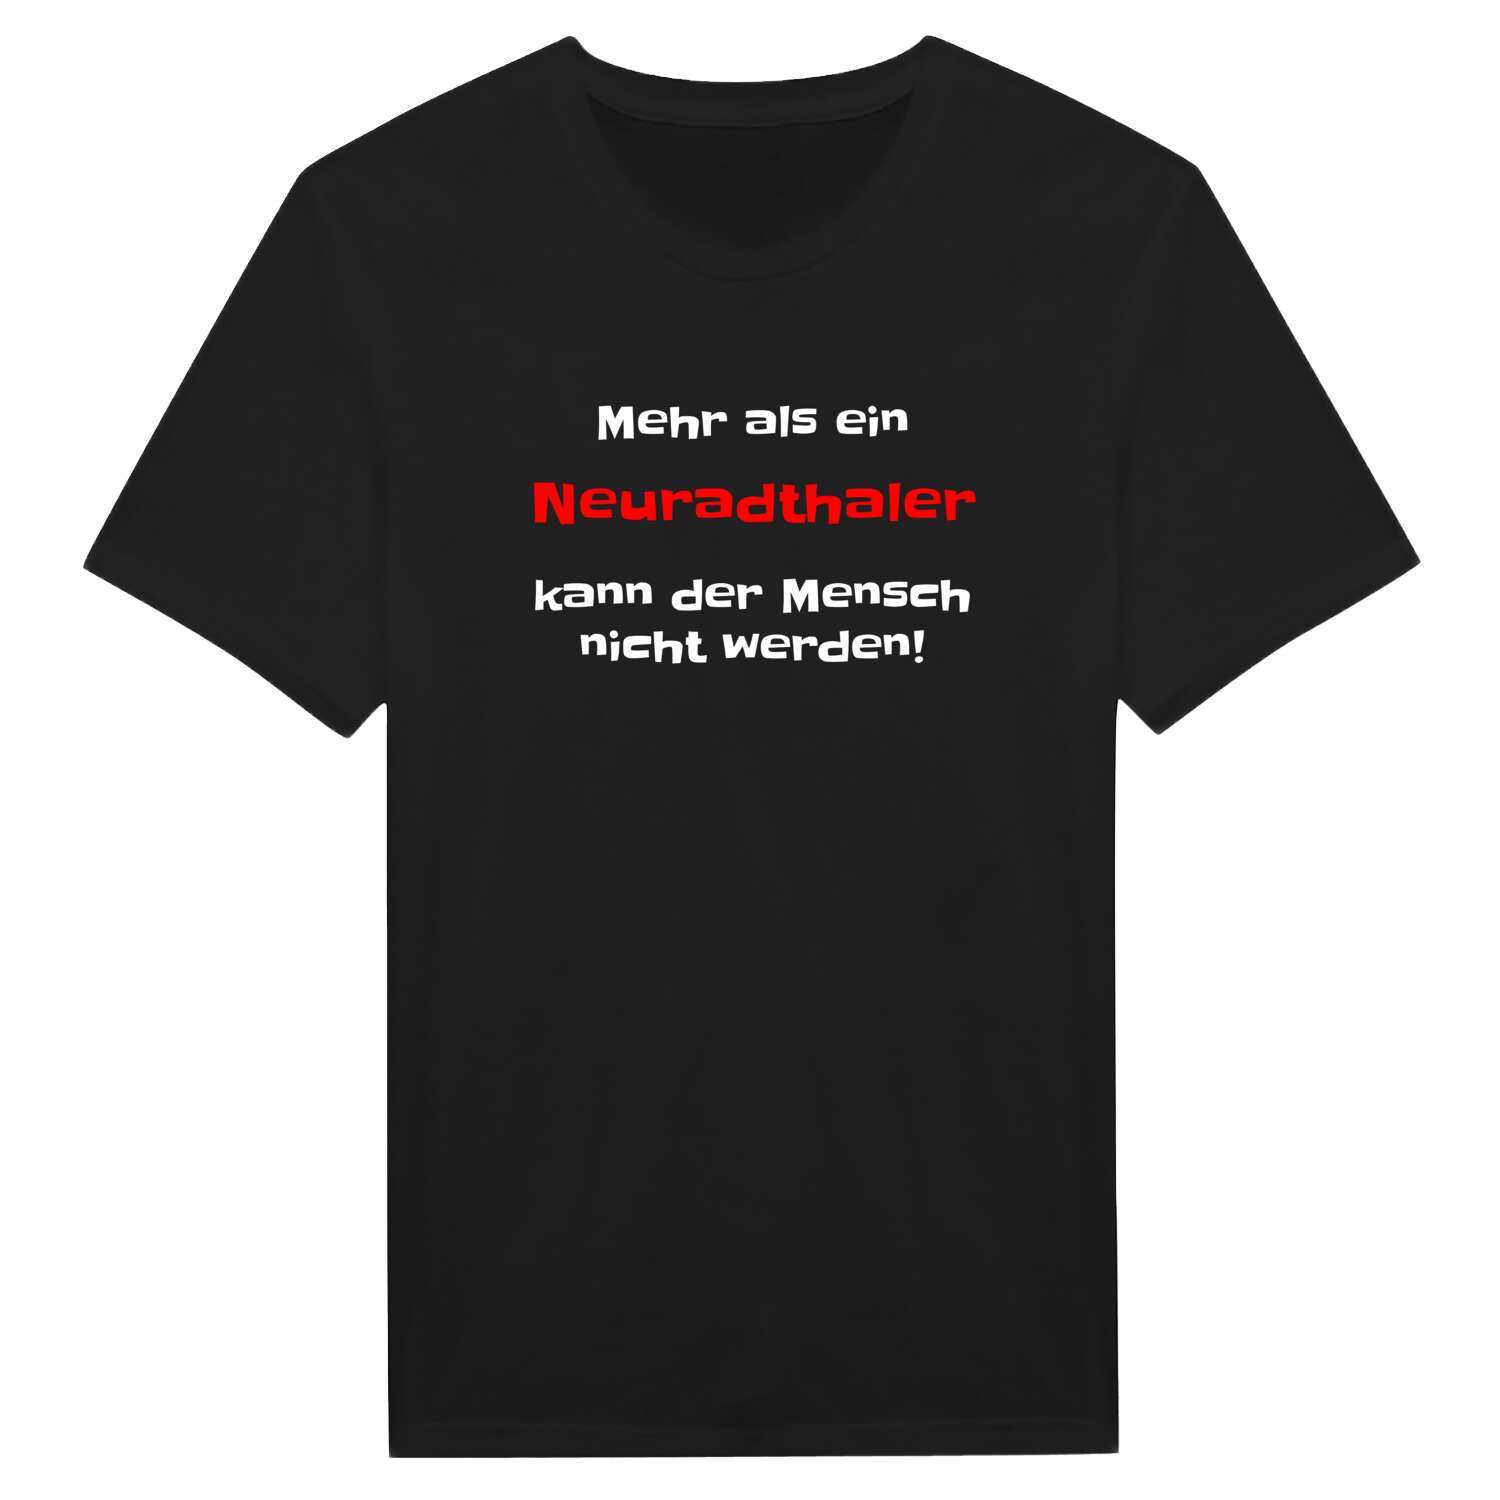 Neuradthal T-Shirt »Mehr als ein«